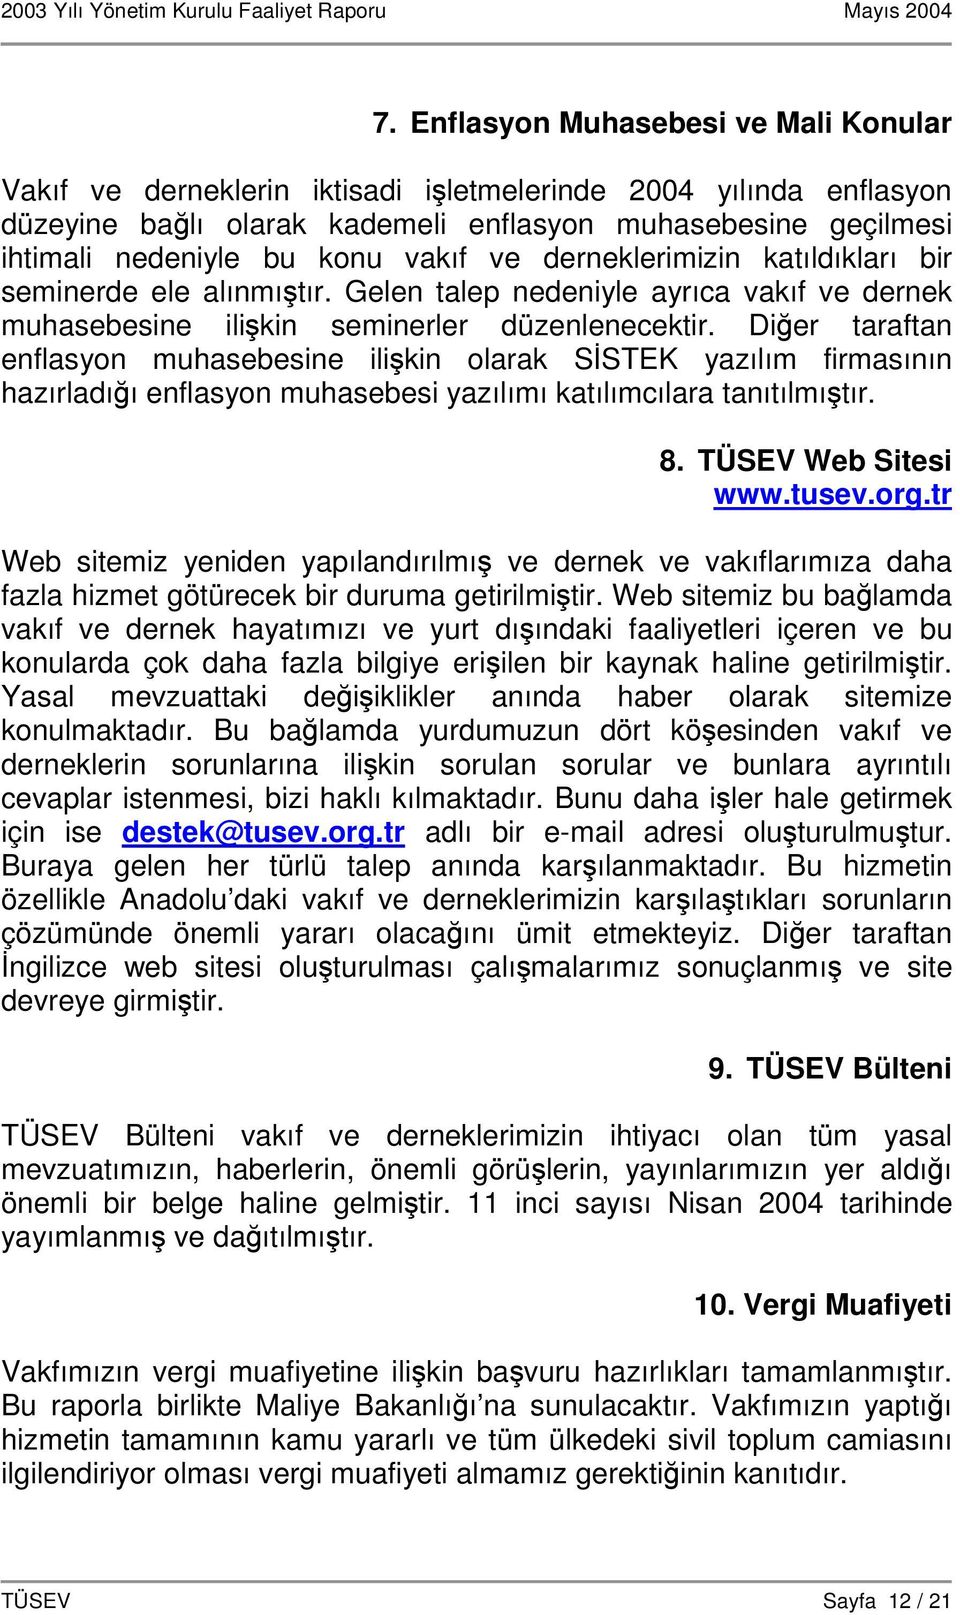 Dier taraftan enflasyon muhasebesine ilikin olarak SSTEK yazılım firmasının hazırladıı enflasyon muhasebesi yazılımı katılımcılara tanıtılmıtır. 8. TÜSEV Web Sitesi www.tusev.org.